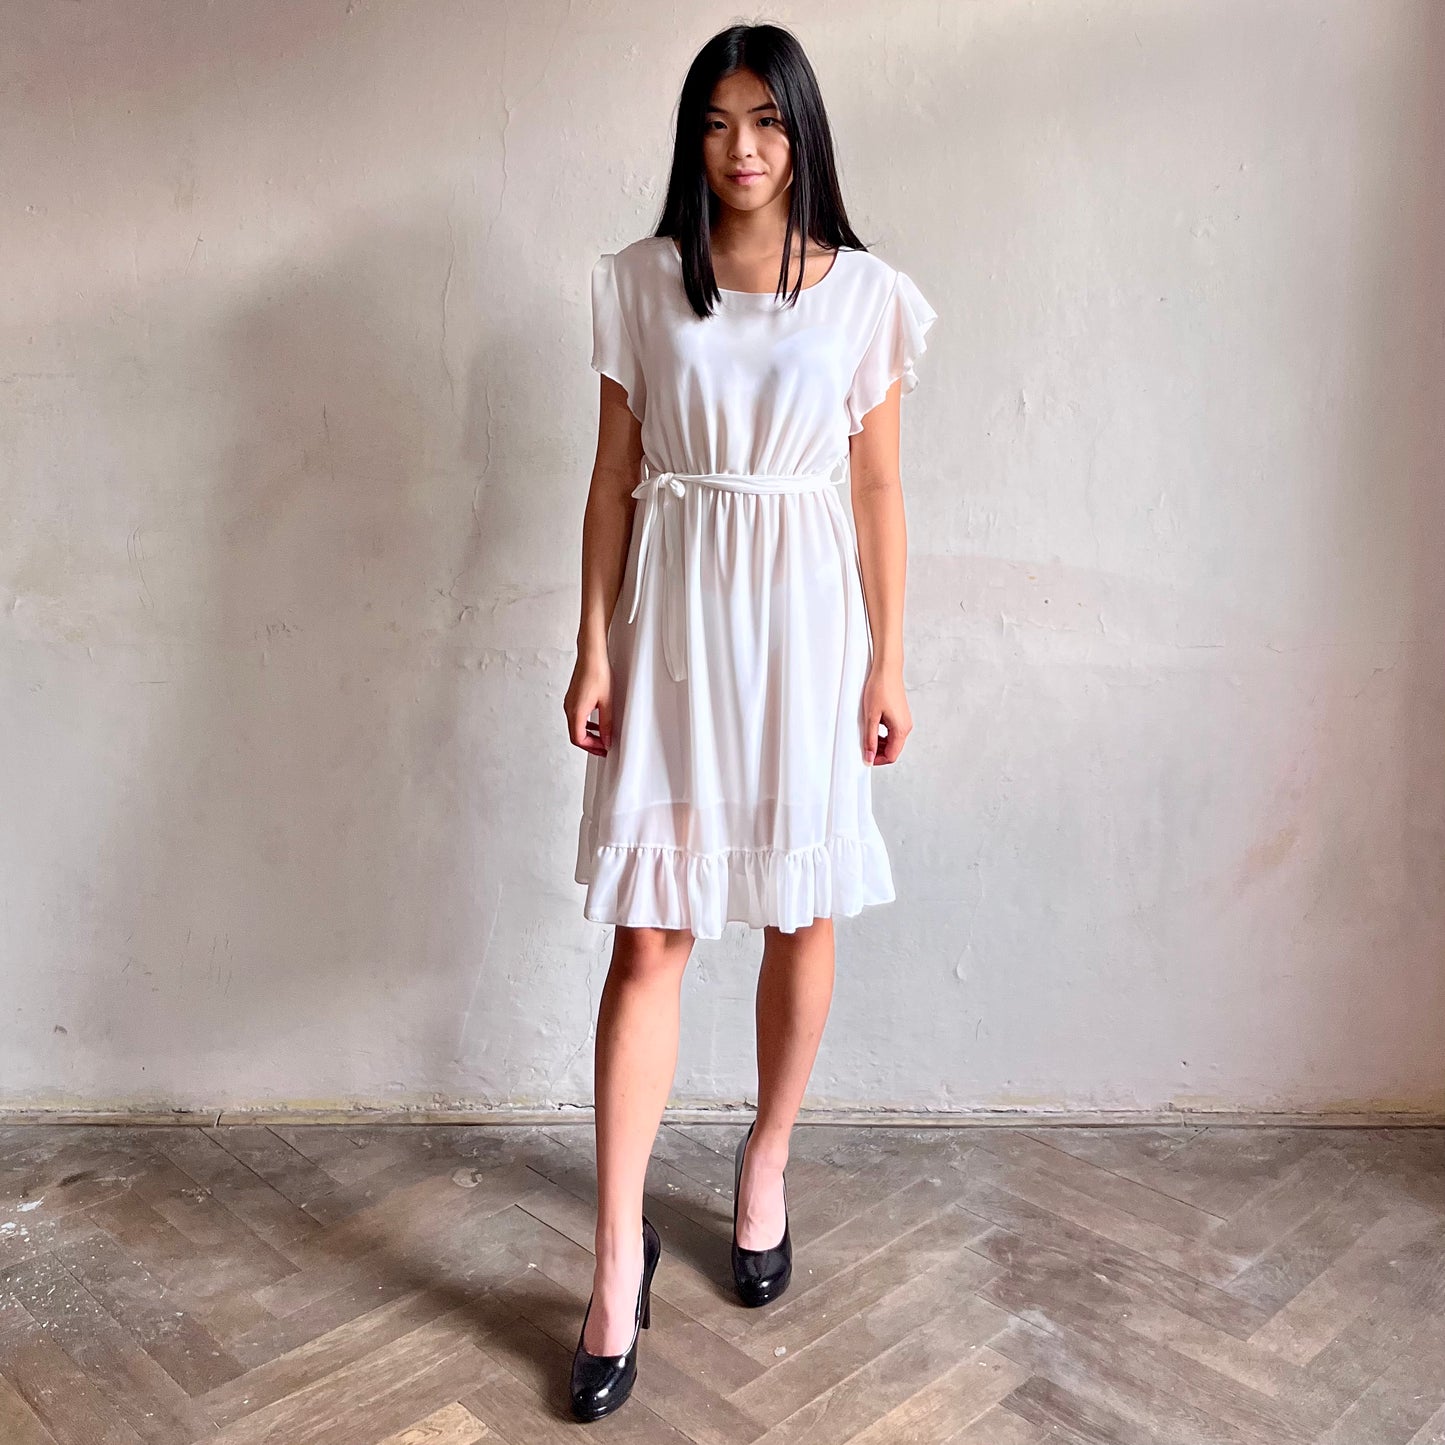 Modelka asijského původu pózující zepředu oblečená ve krátkých bílých společenských šatech s volány